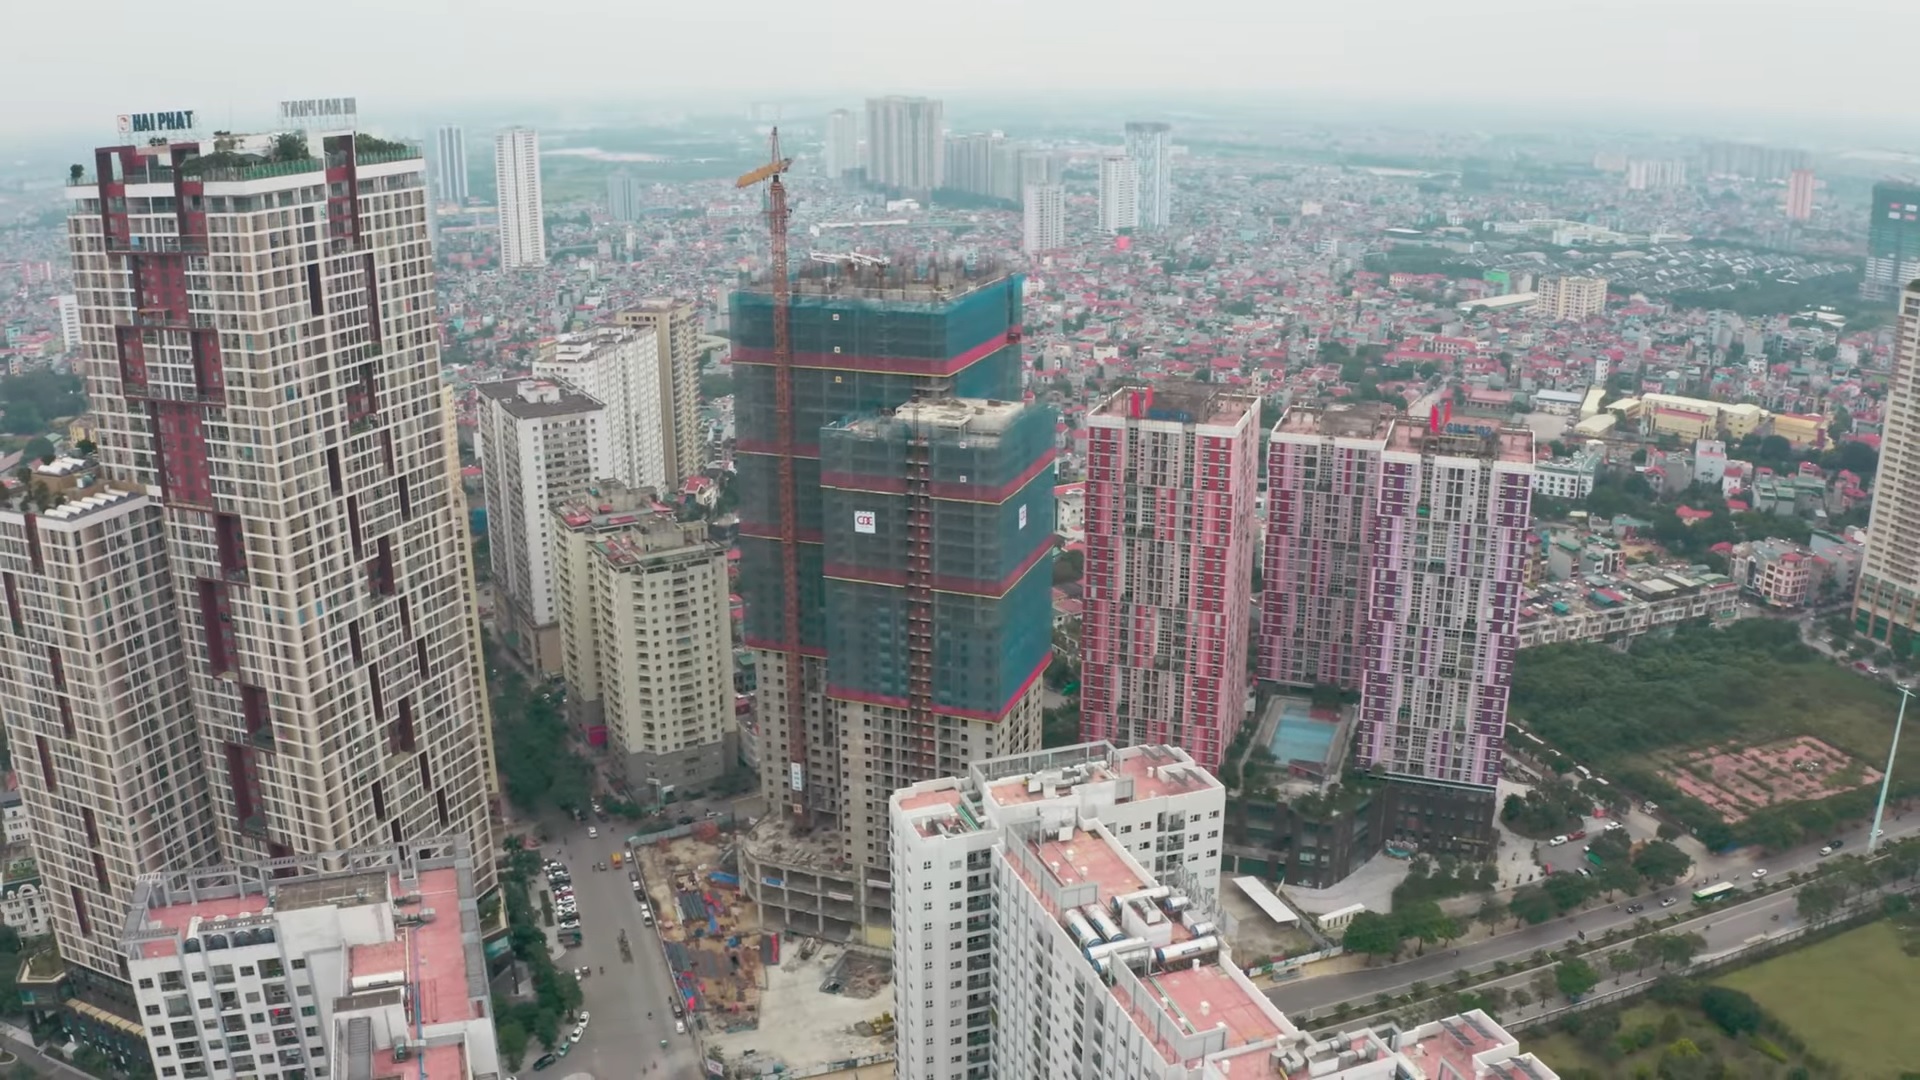 Hà Nội: Hàng loạt dự án bất động sản lớn sắp thanh tra về bảo vệ môi trường - Ảnh 1.